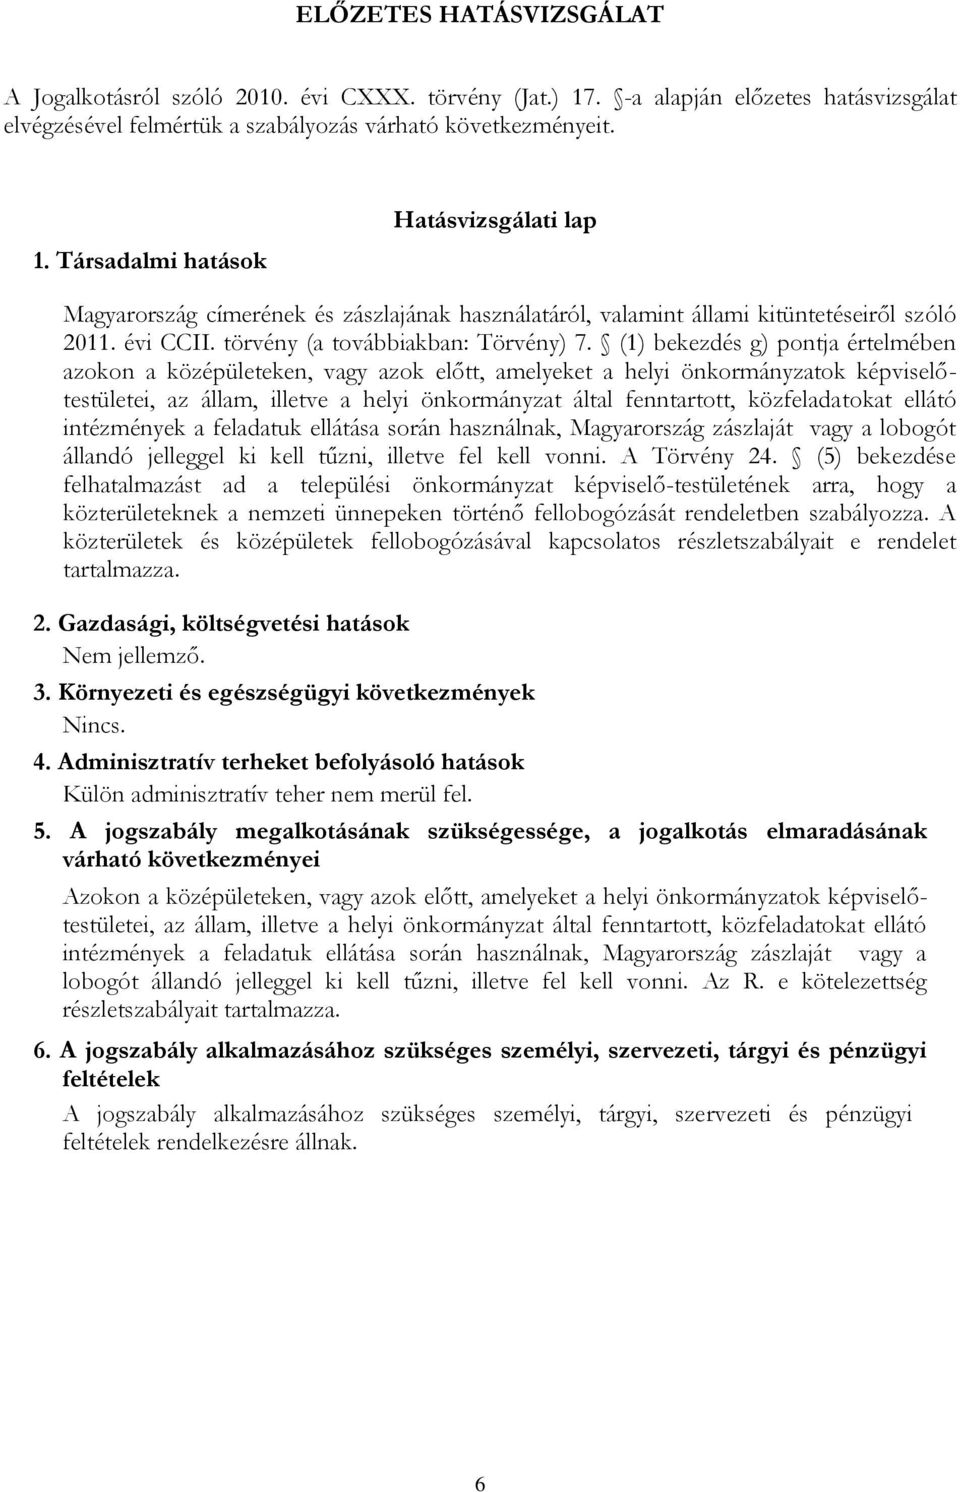 Társadalmi hatások Hatásvizsgálati lap Magyarország címerének és zászlajának használatáról, valamint állami kitüntetéseiről szóló 2011. évi CCII. törvény (a továbbiakban: Törvény) 7.